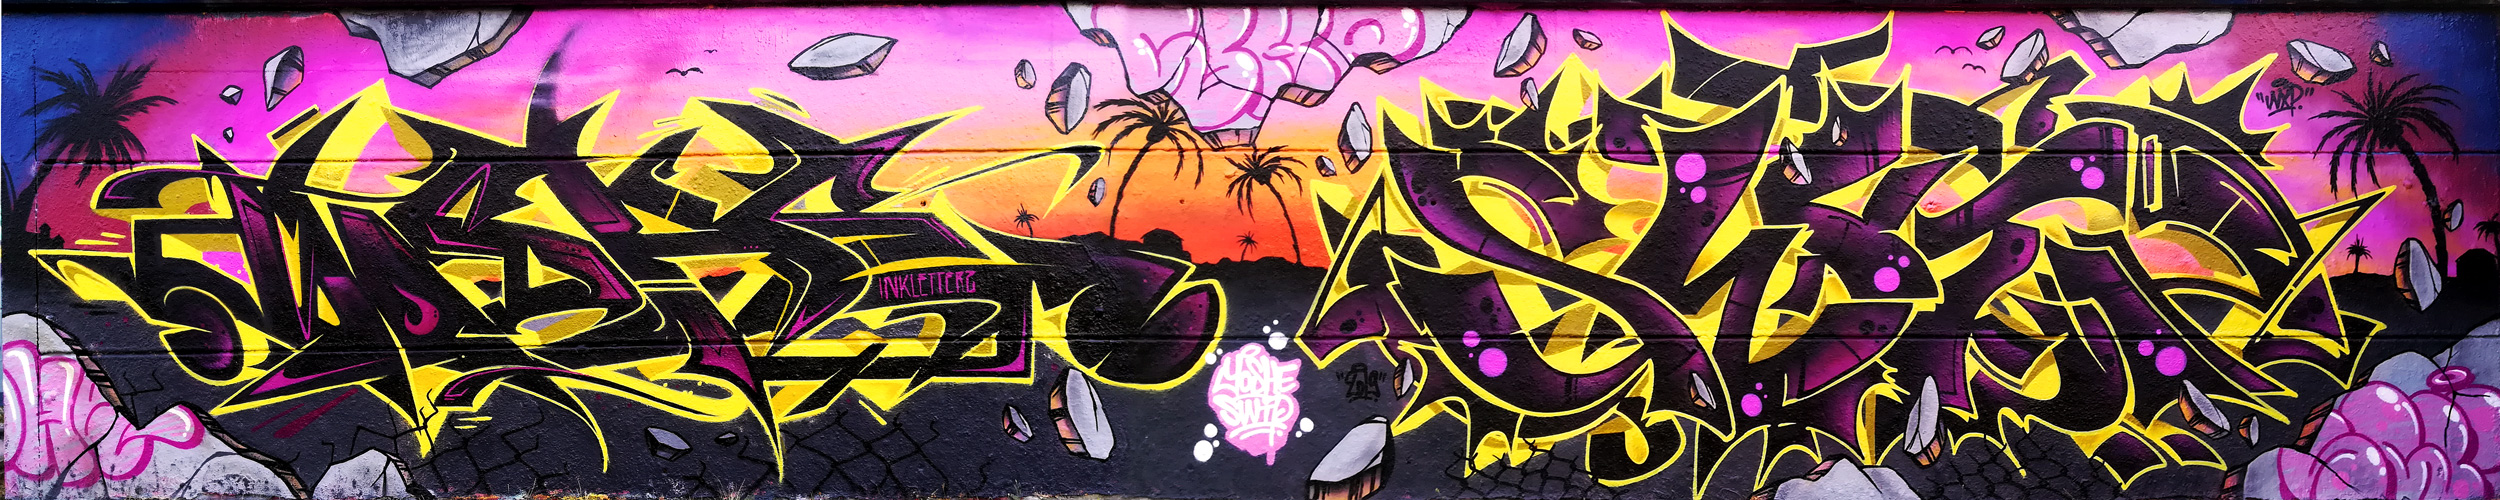 Graffiti sunset 